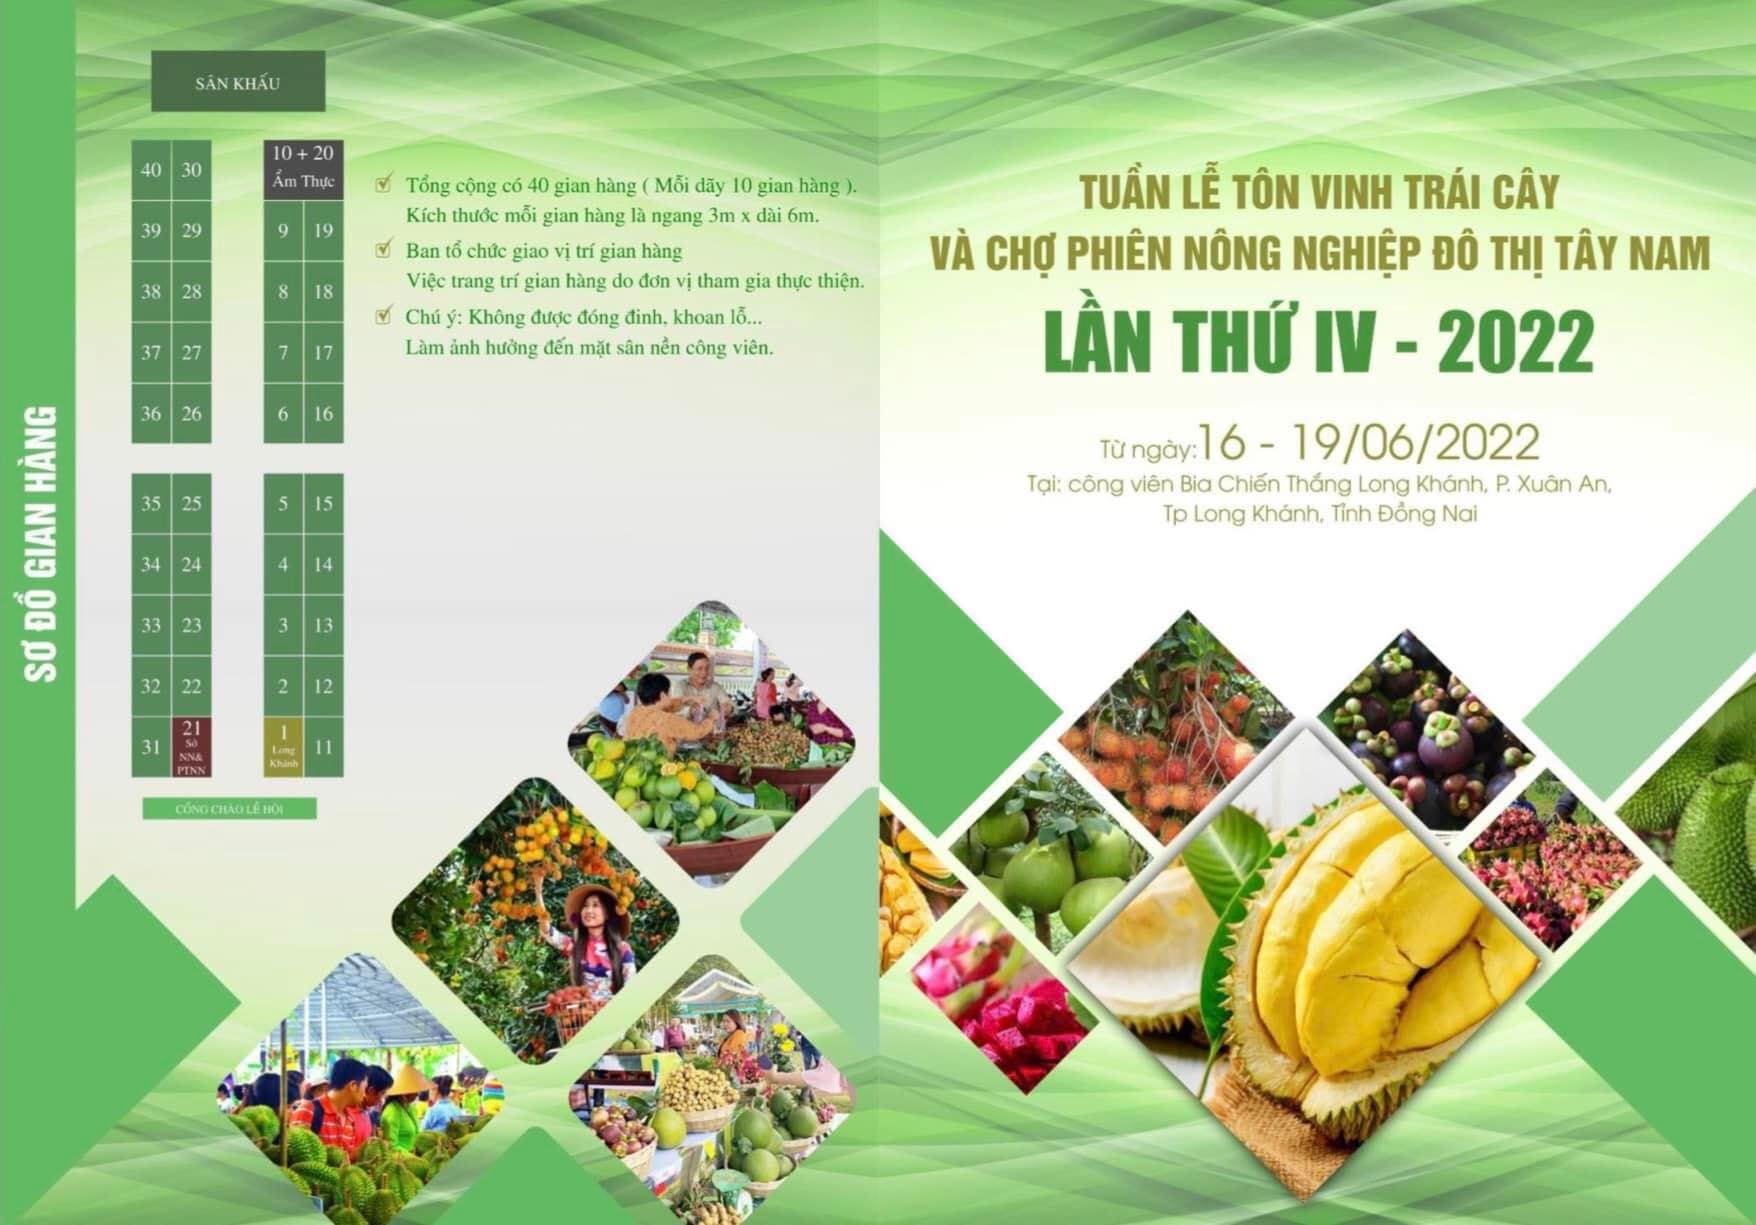 Khang Thịnh tham gia tuần lễ tôn vinh trái cây và Chợ phiên nông nghiệp đô thị Tây Nam năm 2022